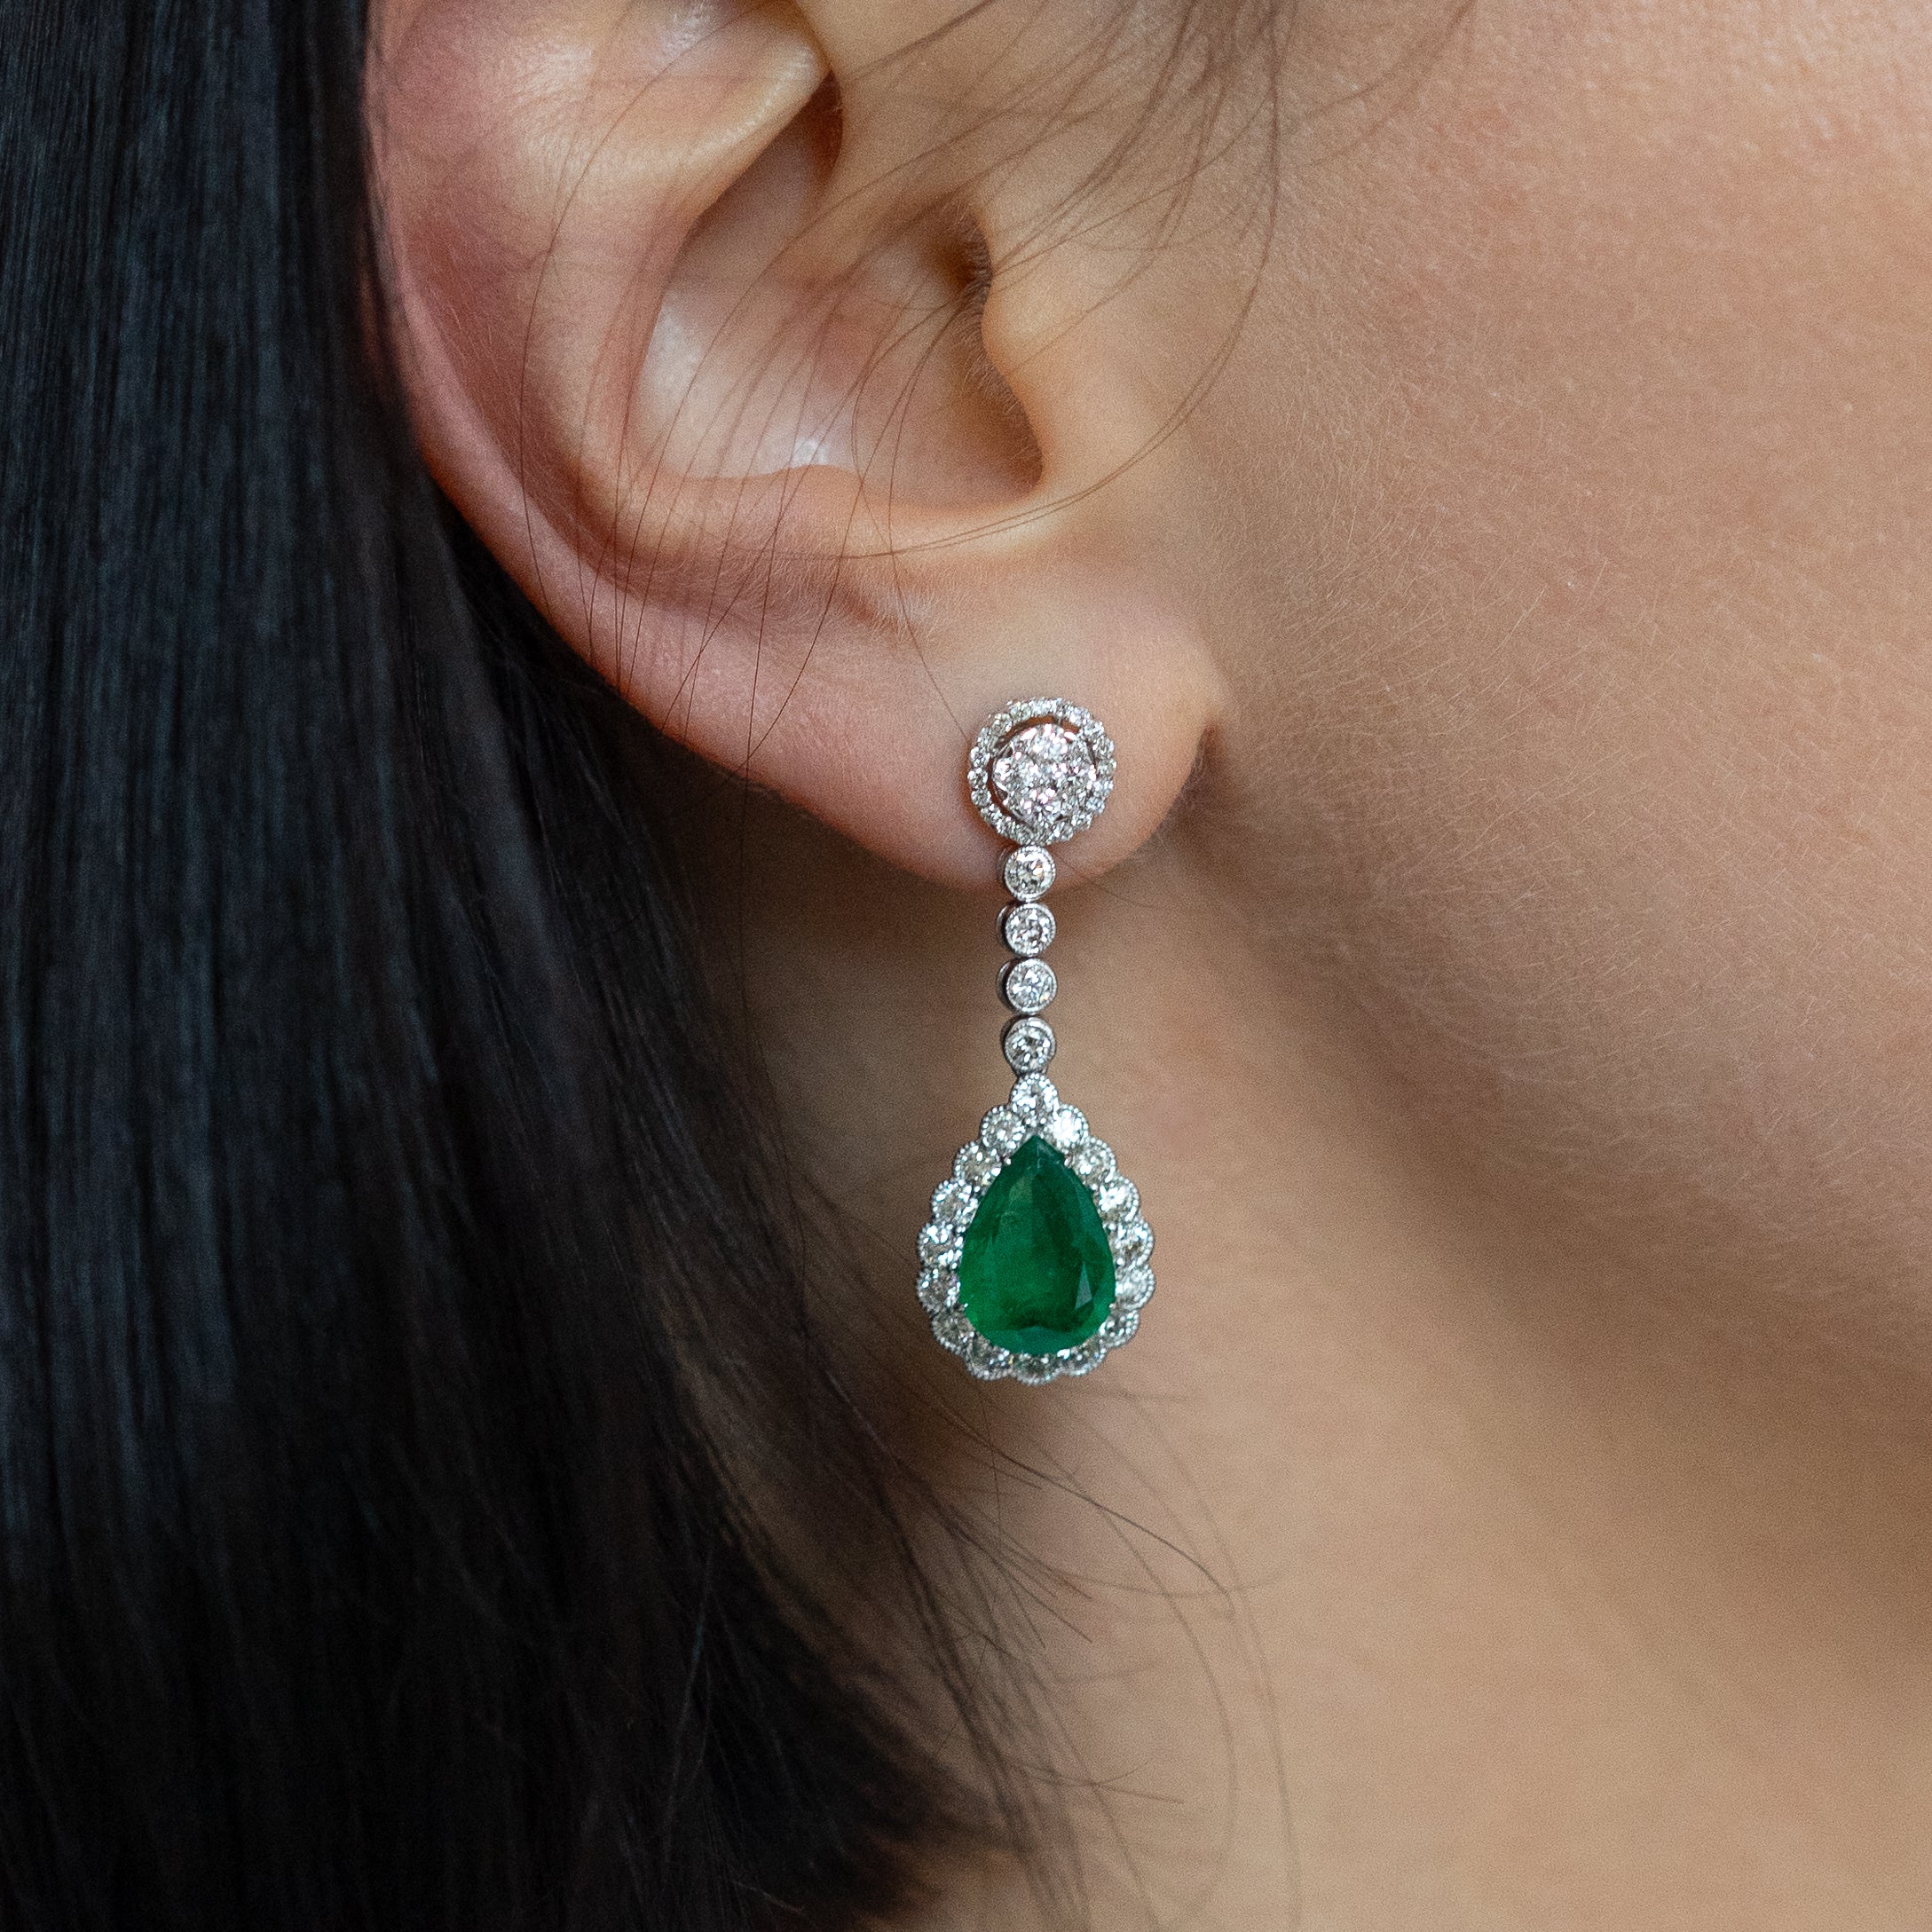 Emerald Earrings with Diamonds